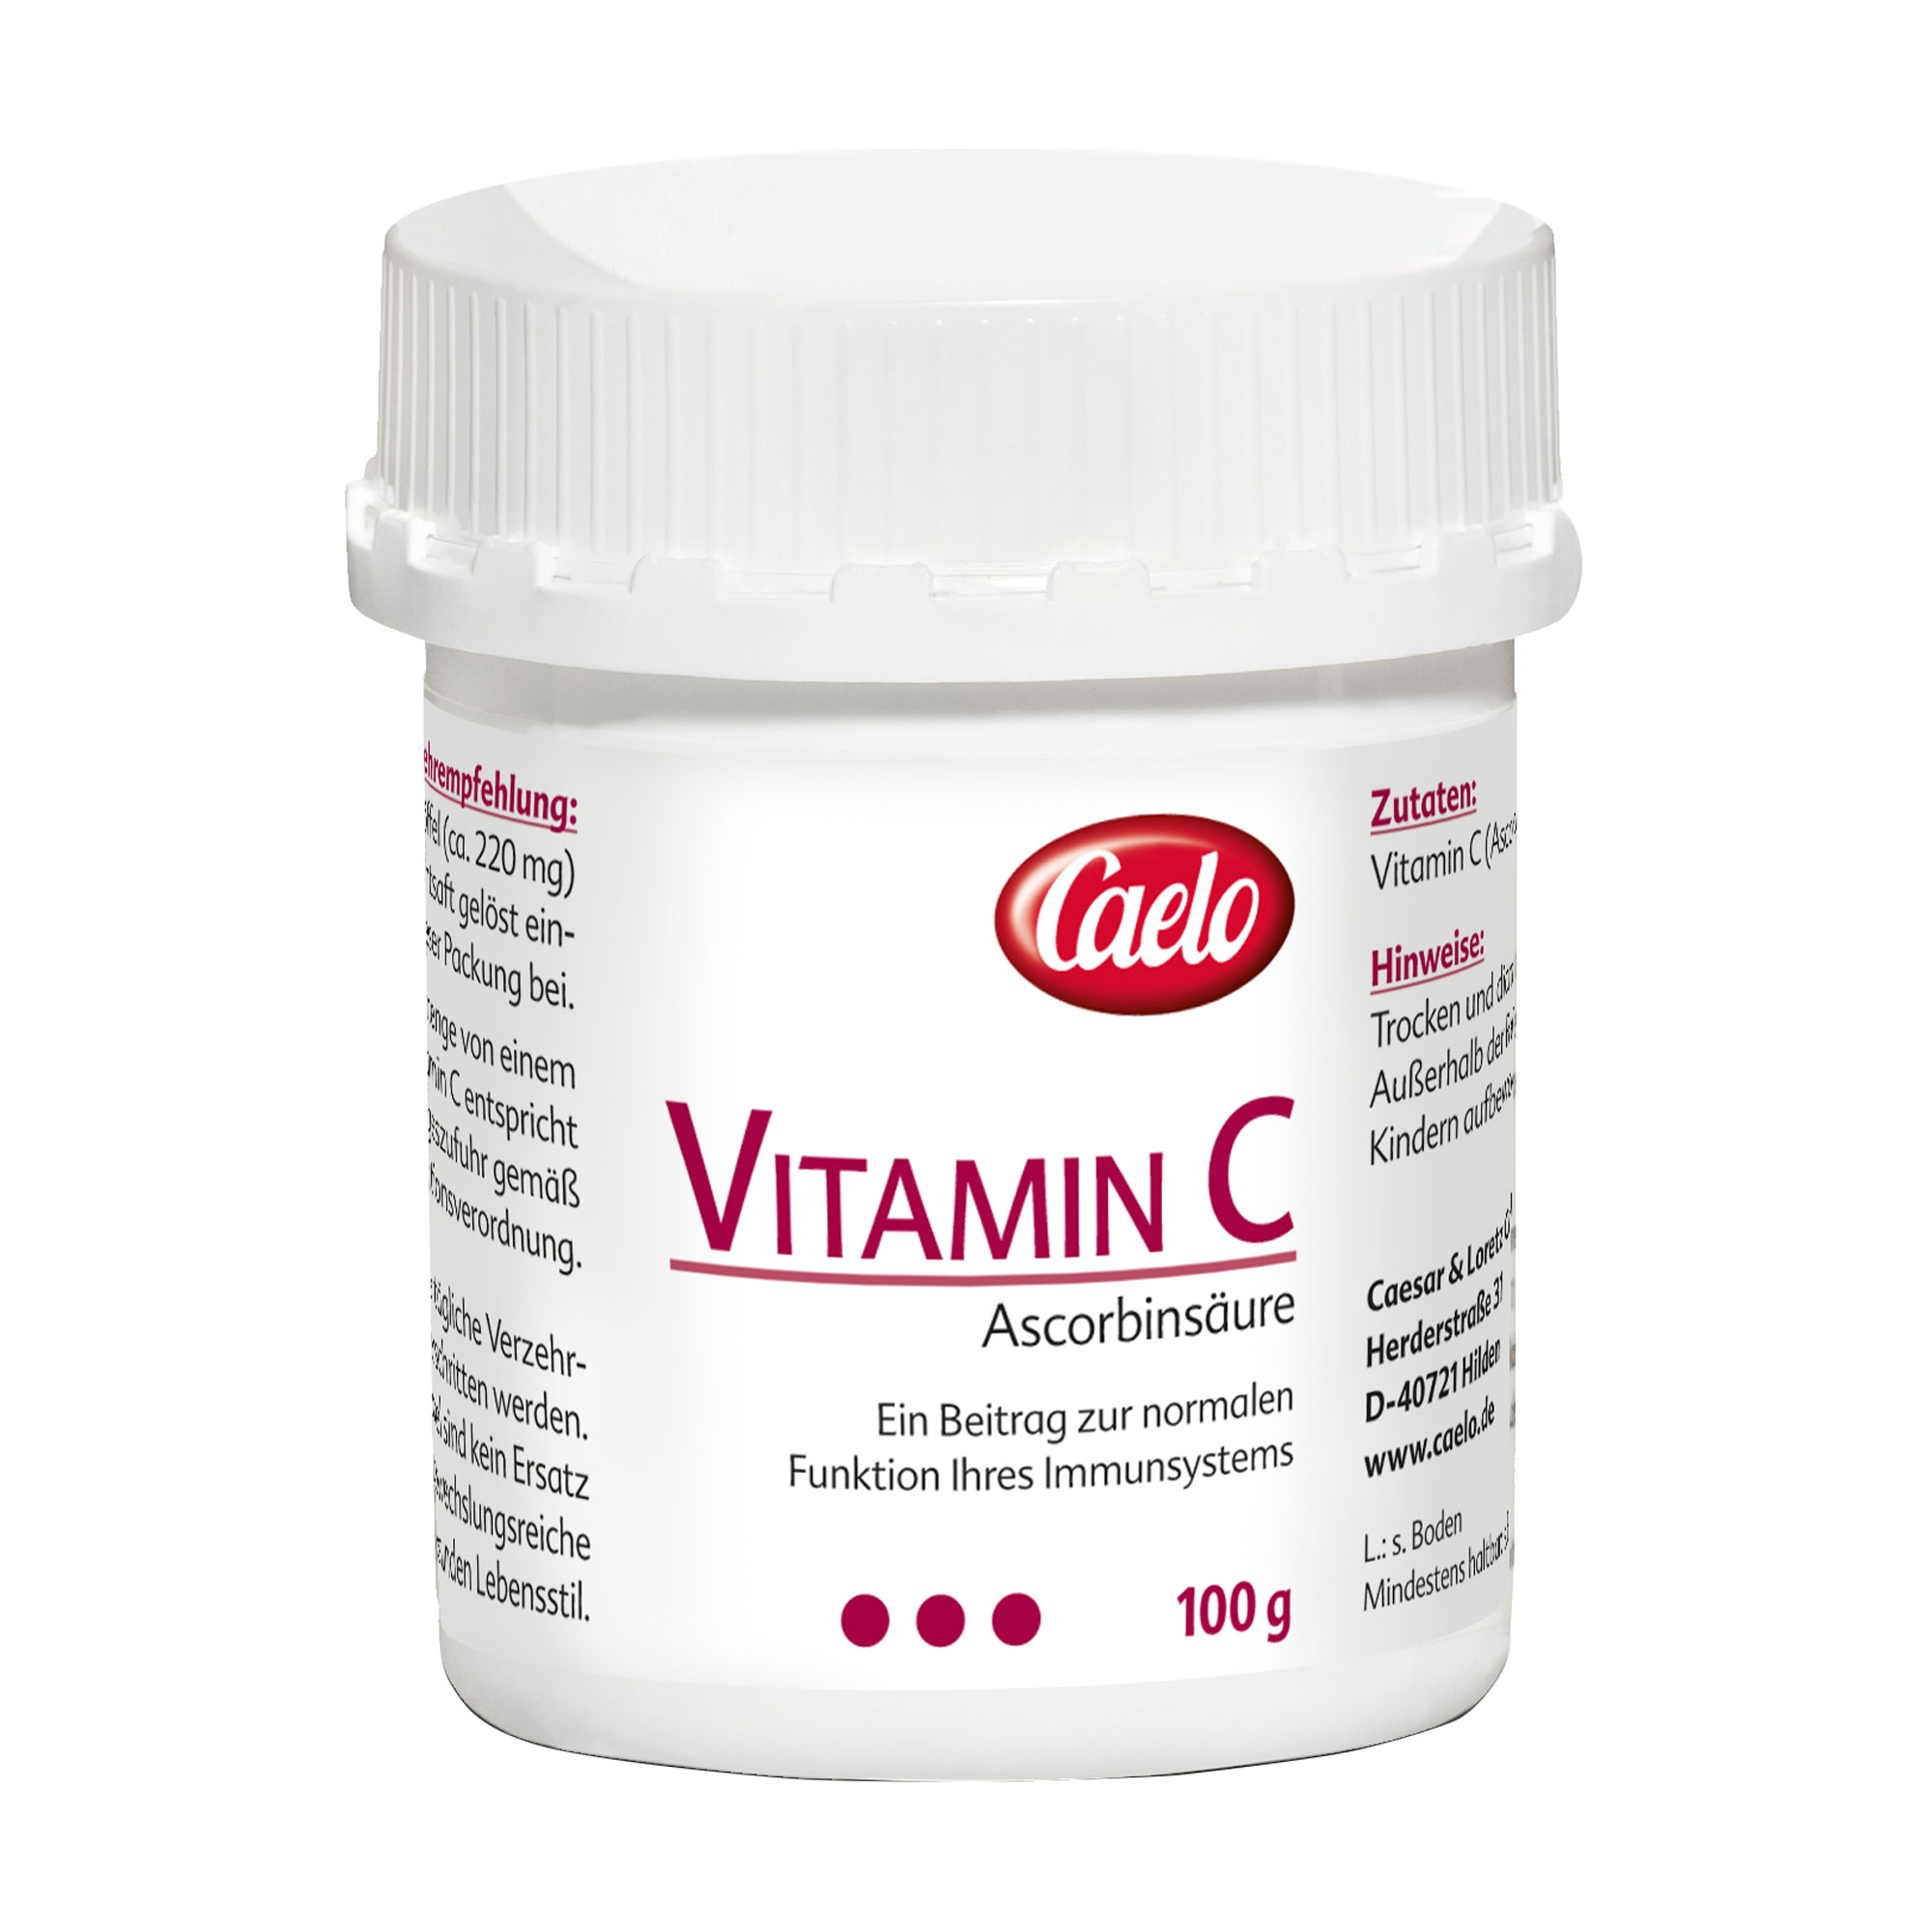 Nahrungsergänzungsmittel mit Vitamin C.